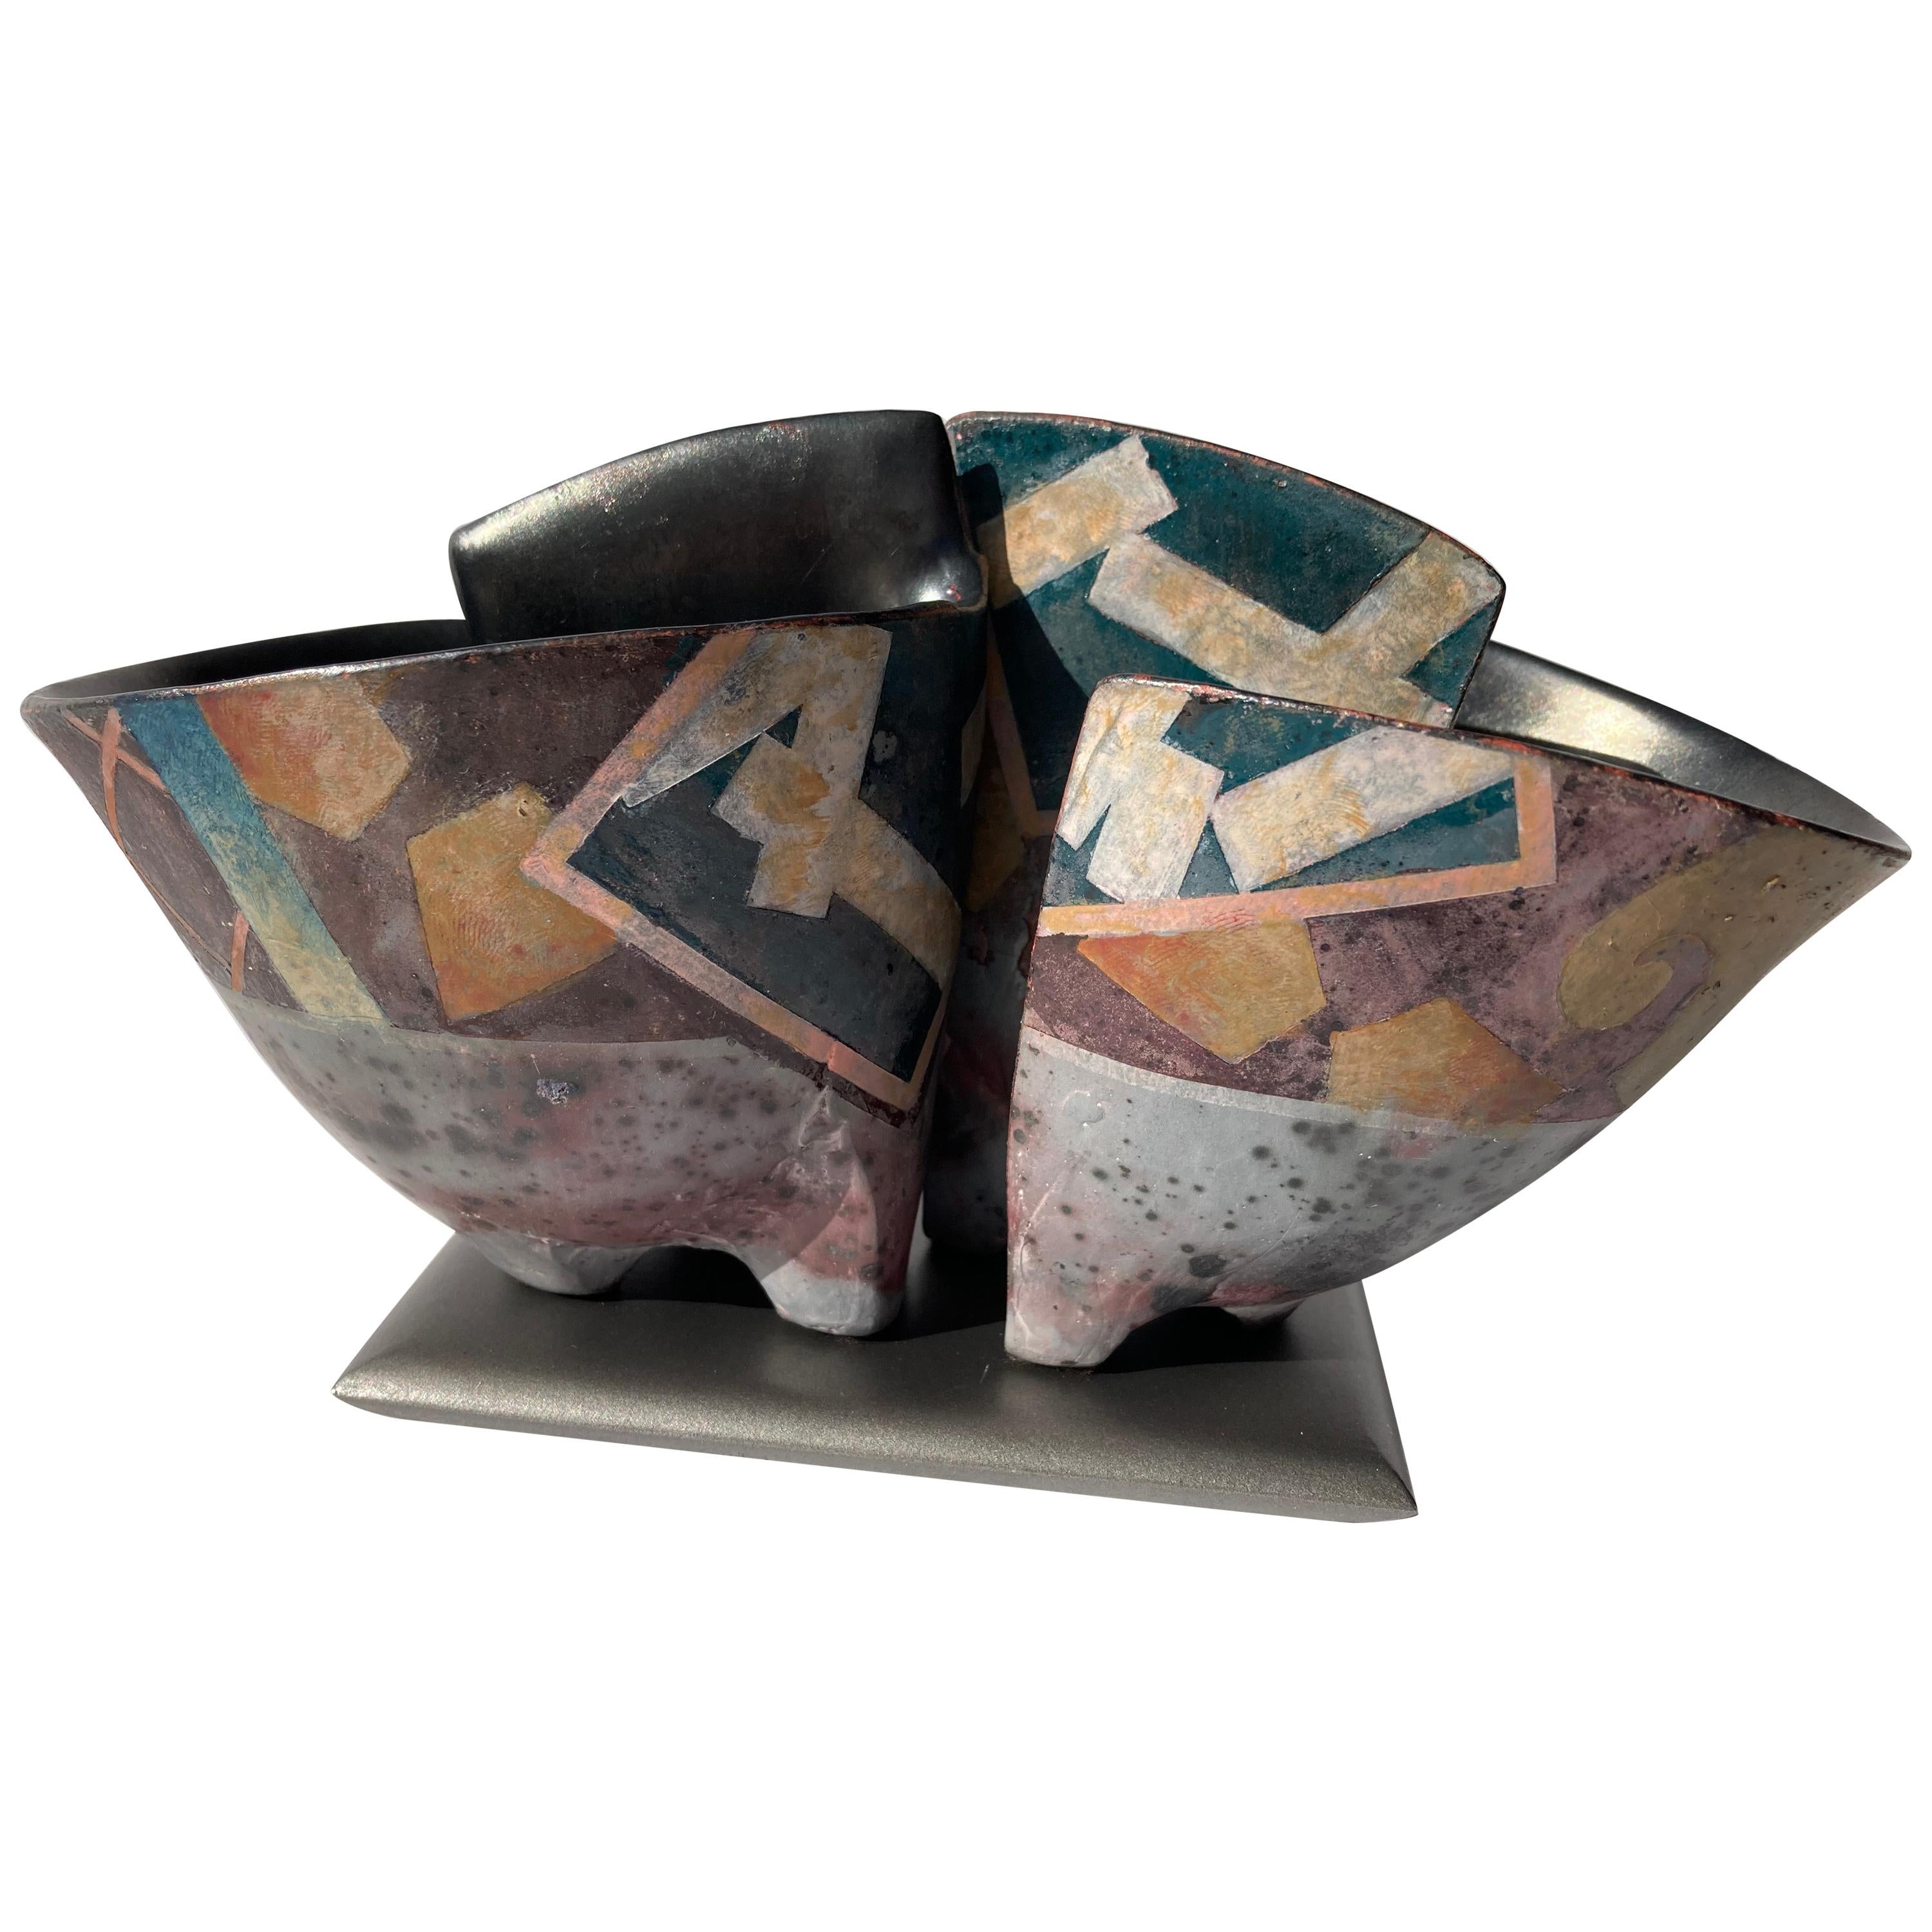 Bennett Bean Pair Bowls / Vases, Ceramic/Pottery on Base Master # 446, Marked